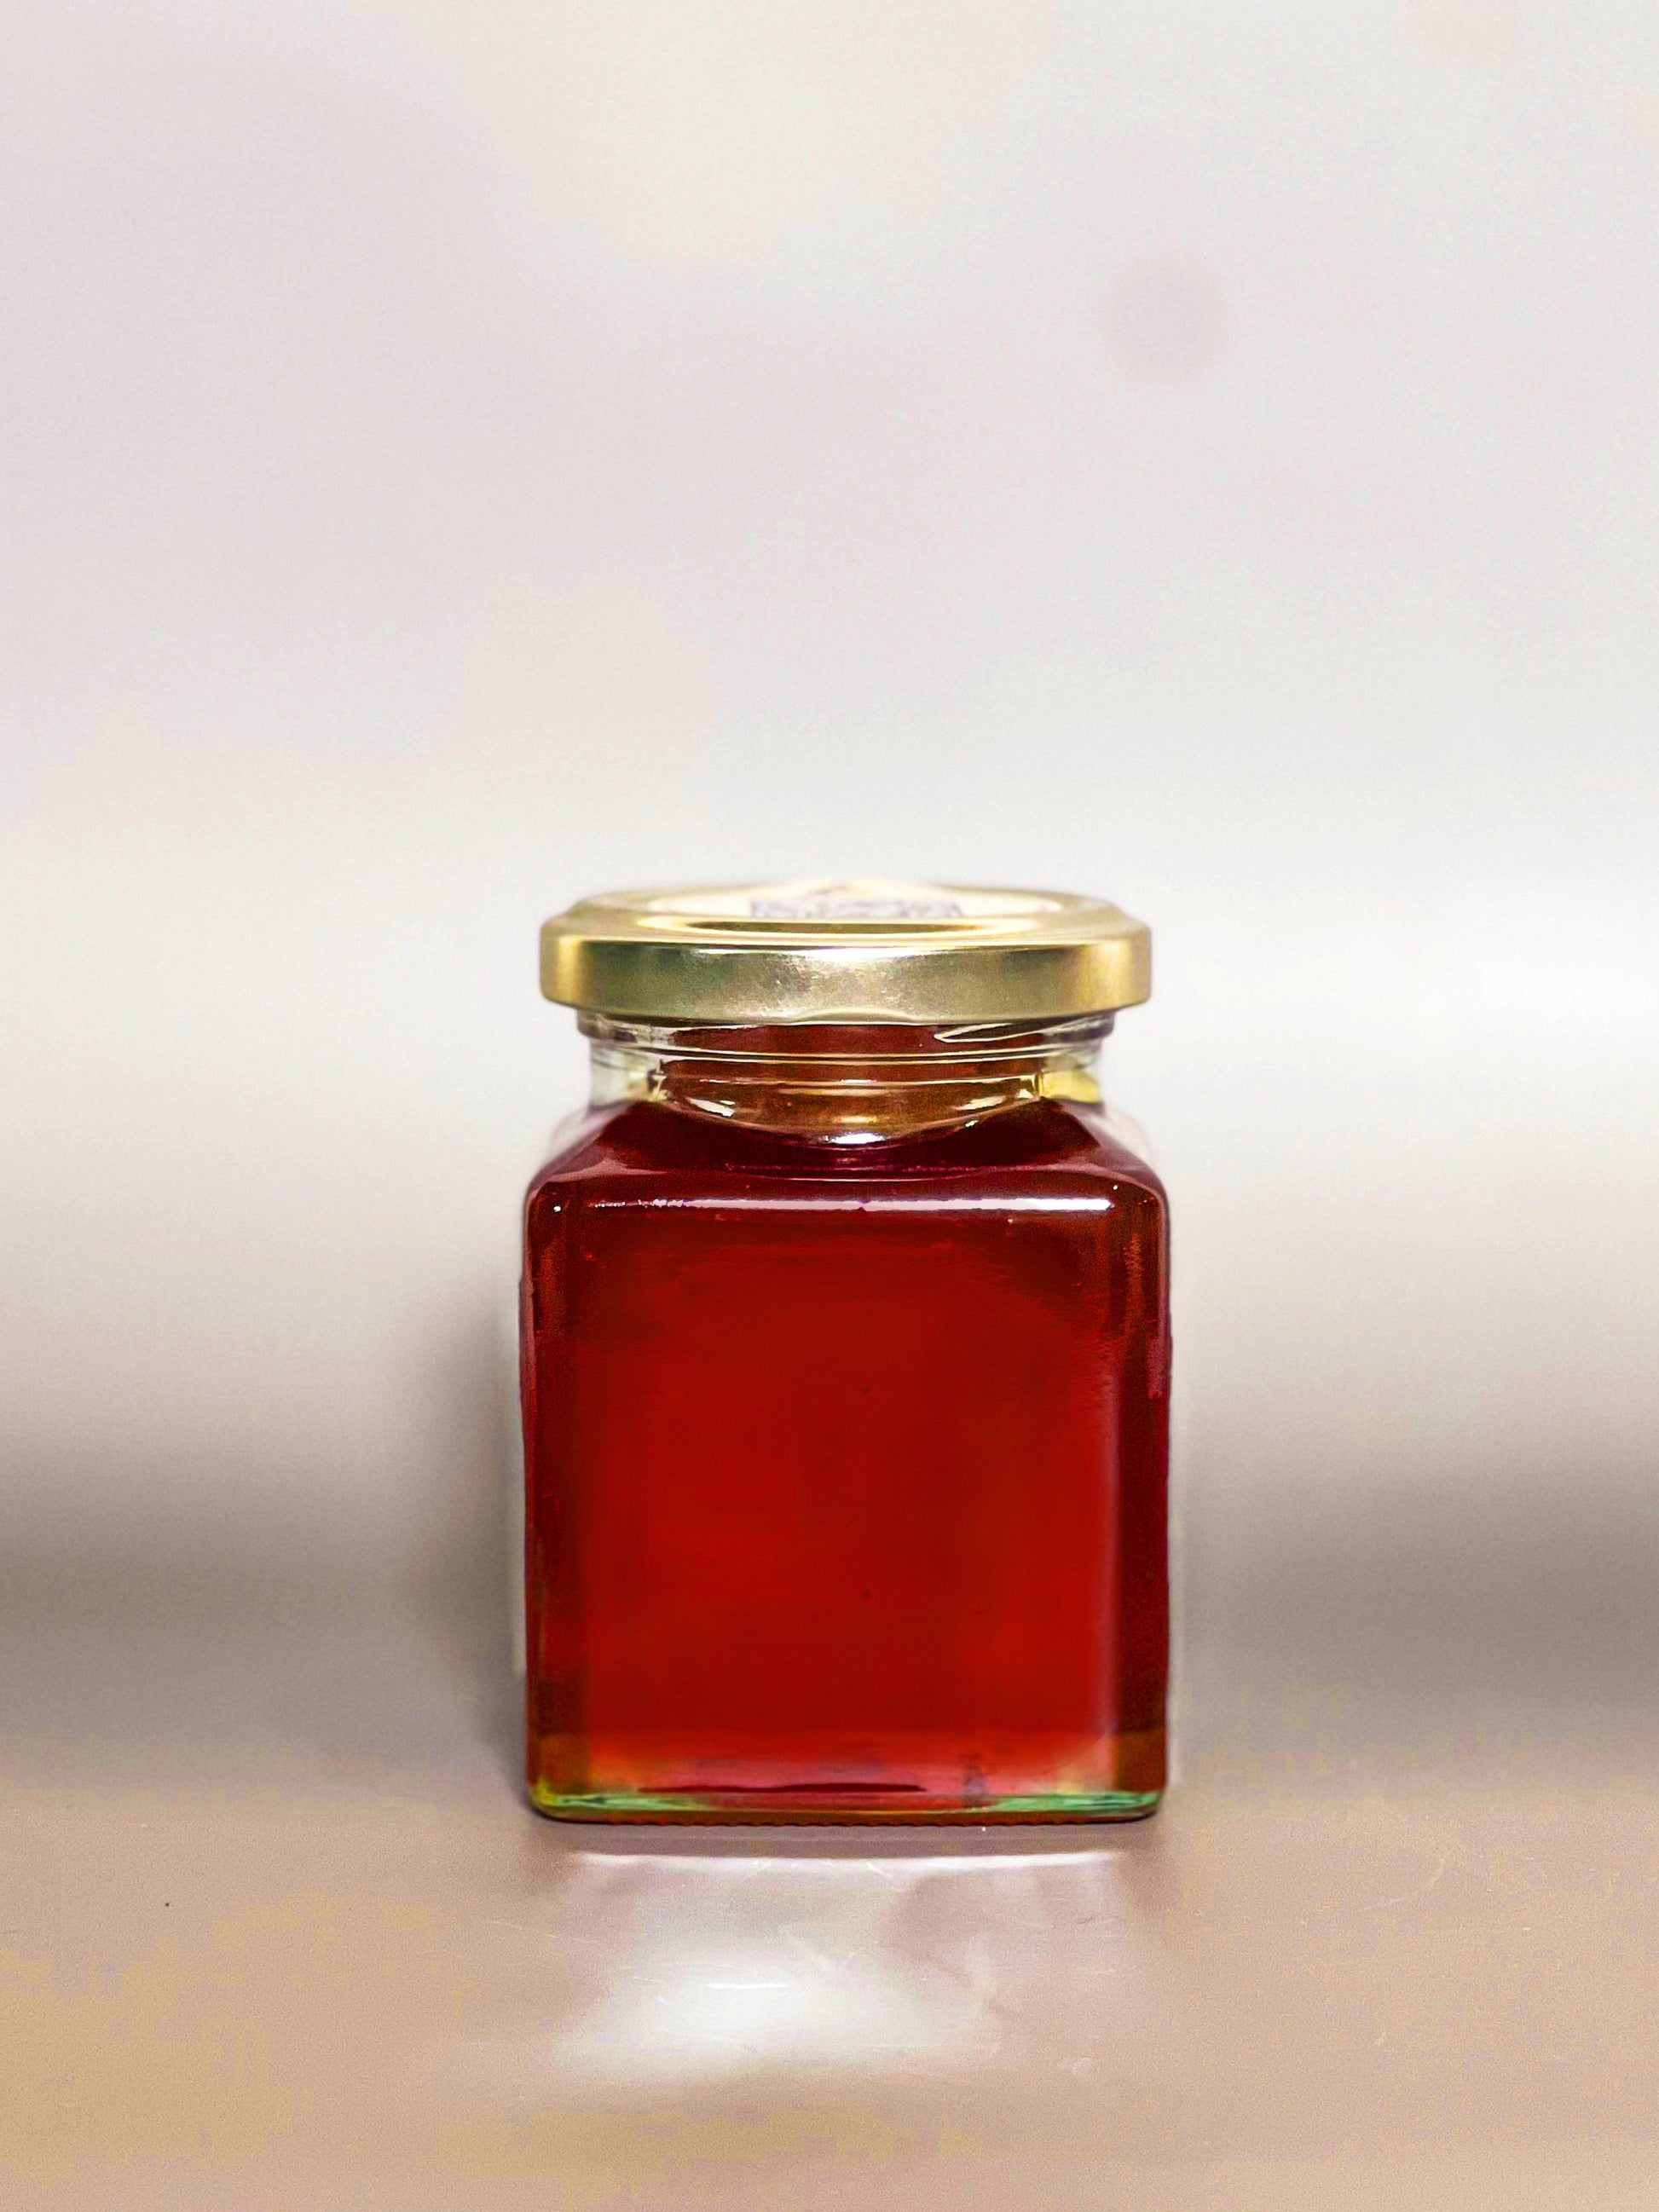 Jarrah Honey 250g - Amber Gold Honey